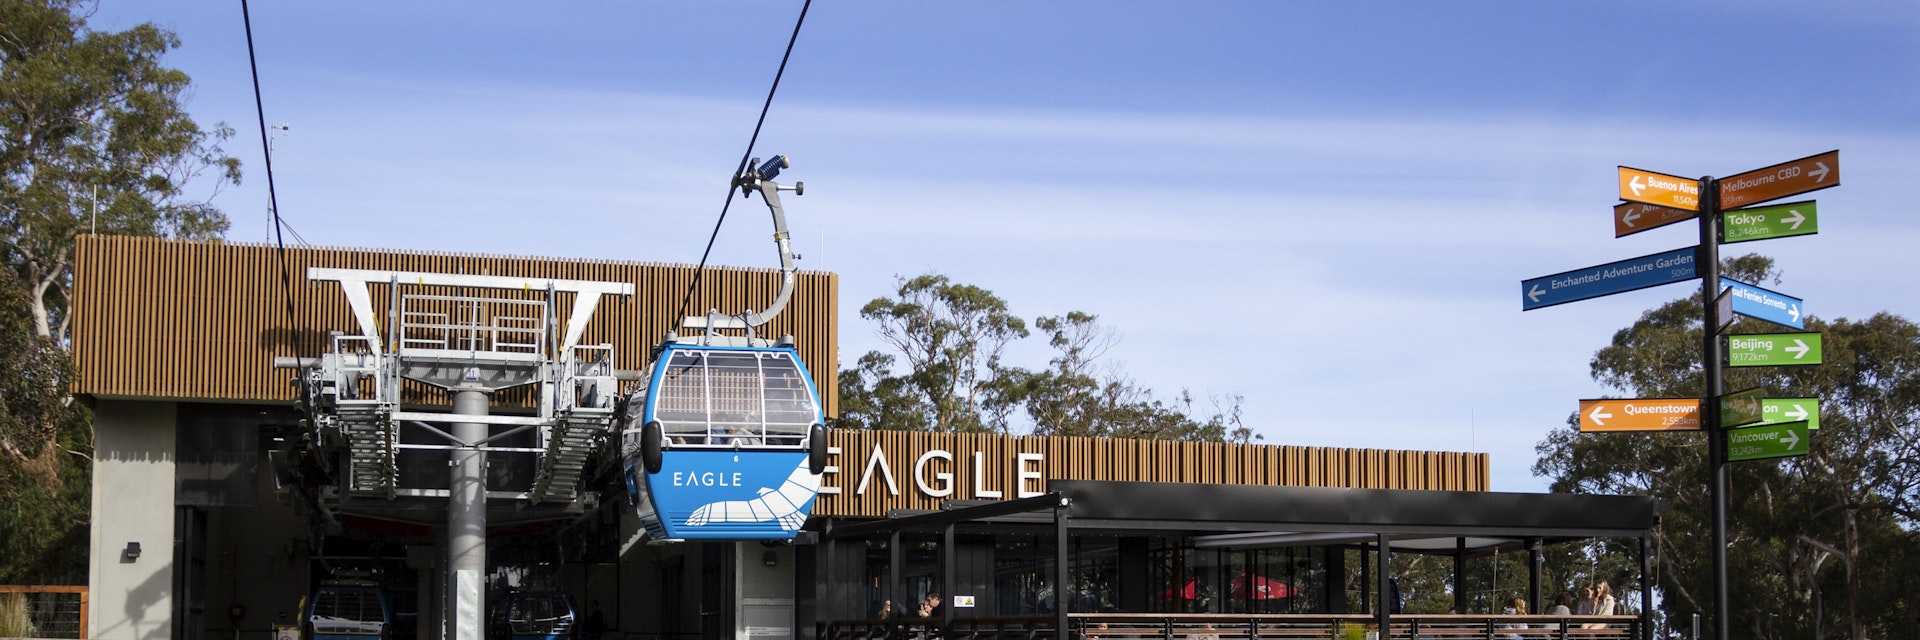 Australia, Mornington Peninsula - Jul 2018 - The Arthurs Seat Eagle gondola ride and cafe on the Mornington Peninsula